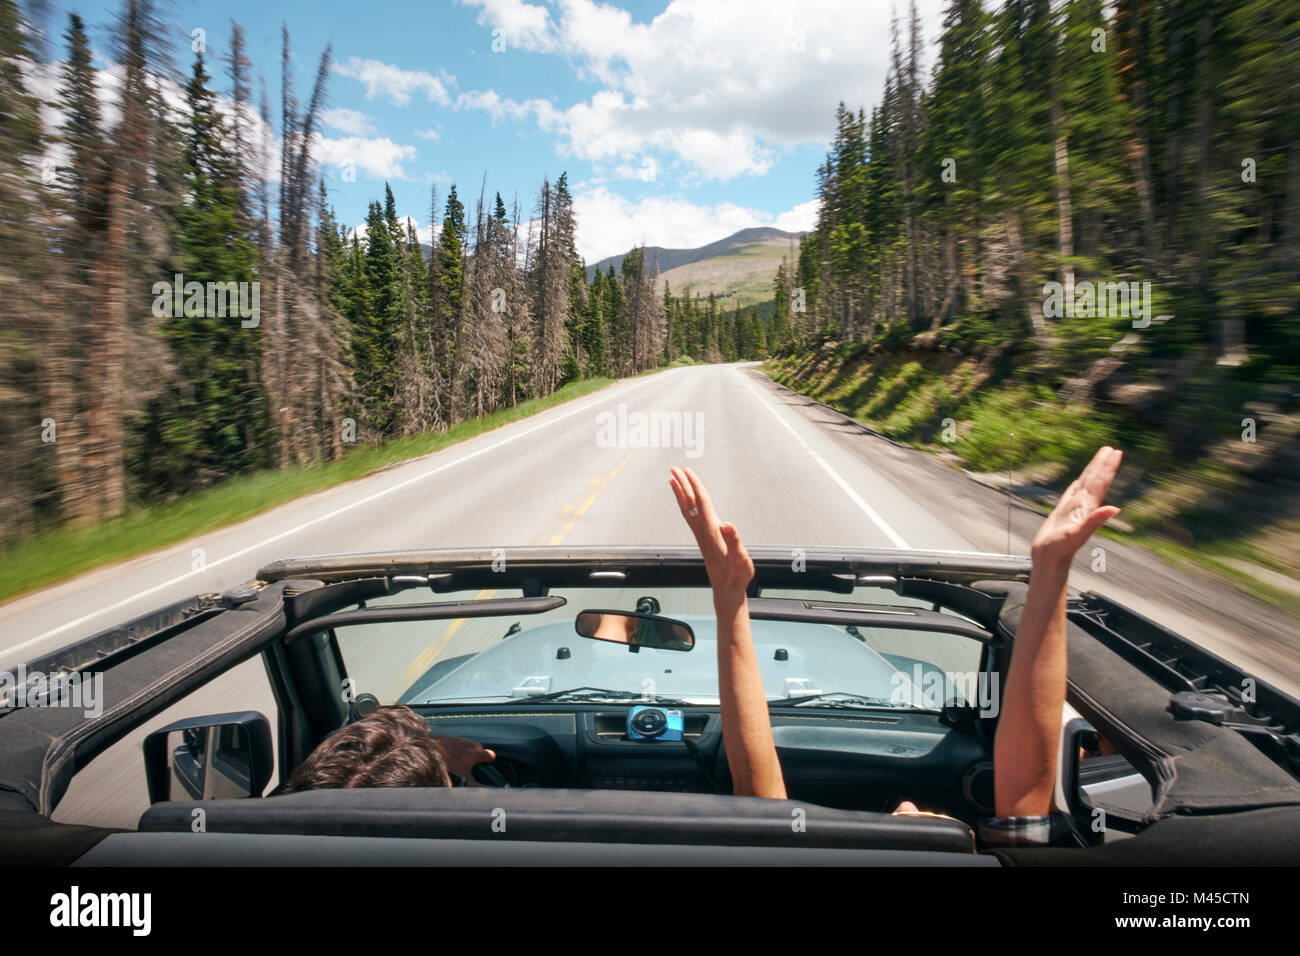 Road Trip couple driving convertible sur une route de campagne avec les mains levées, Breckenridge, Colorado, USA Banque D'Images